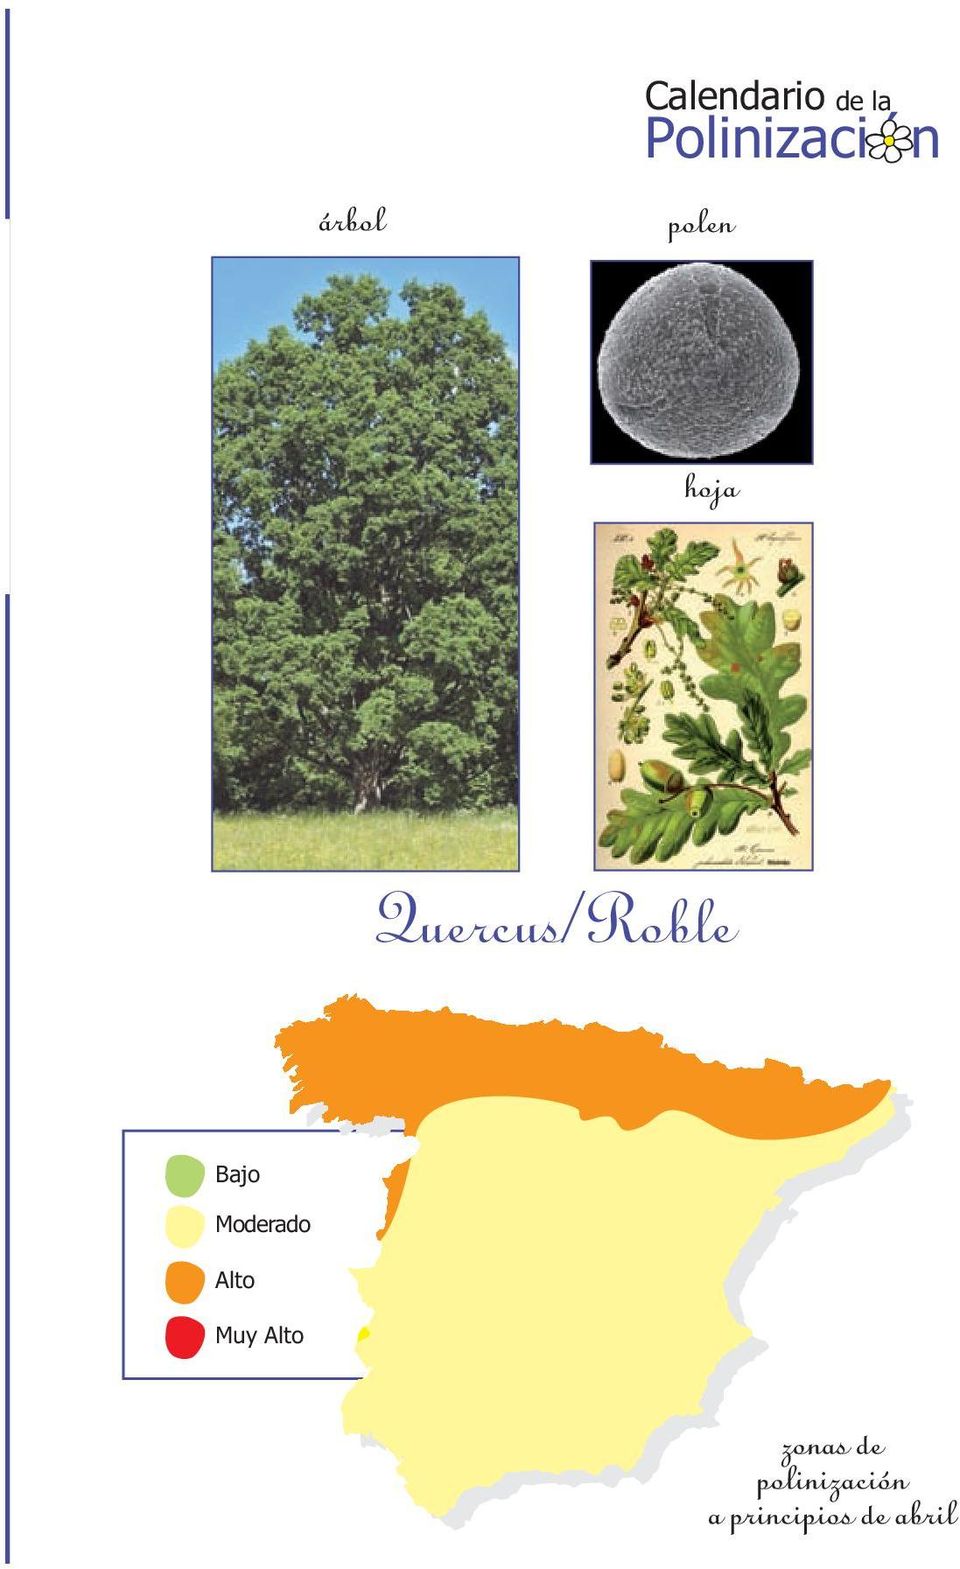 Quercus/Roble